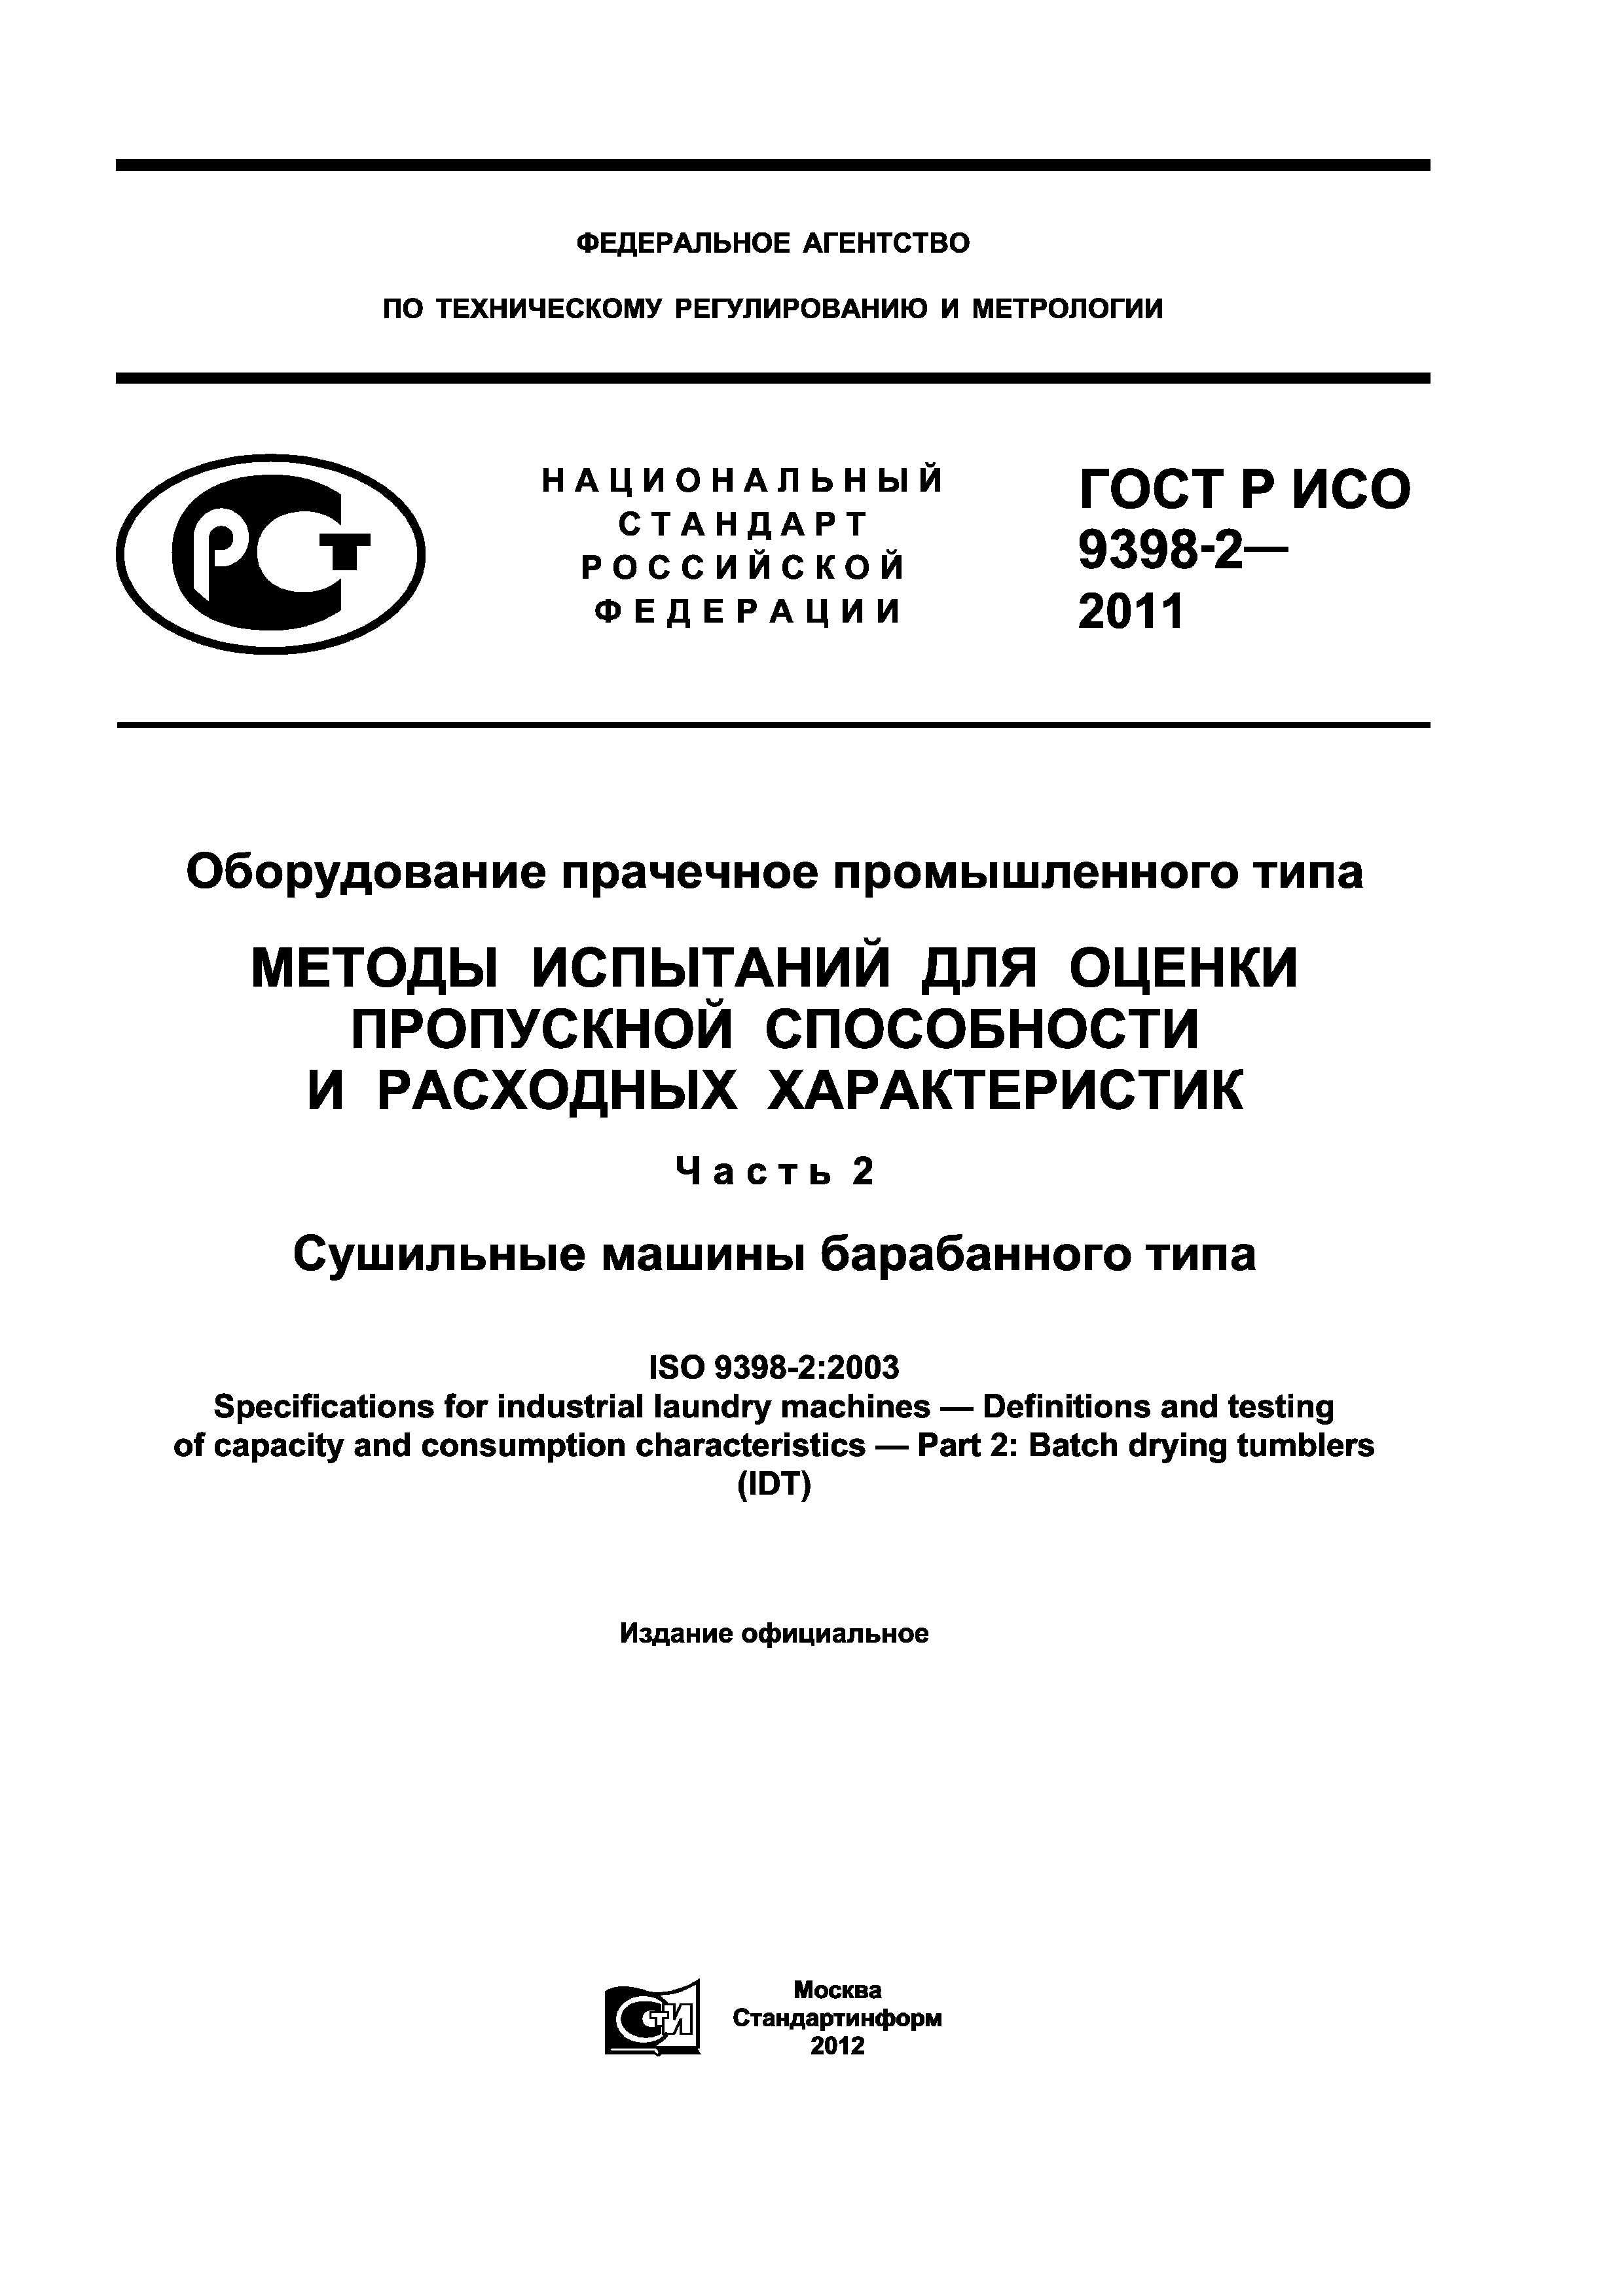 ГОСТ Р ИСО 9398-2-2011